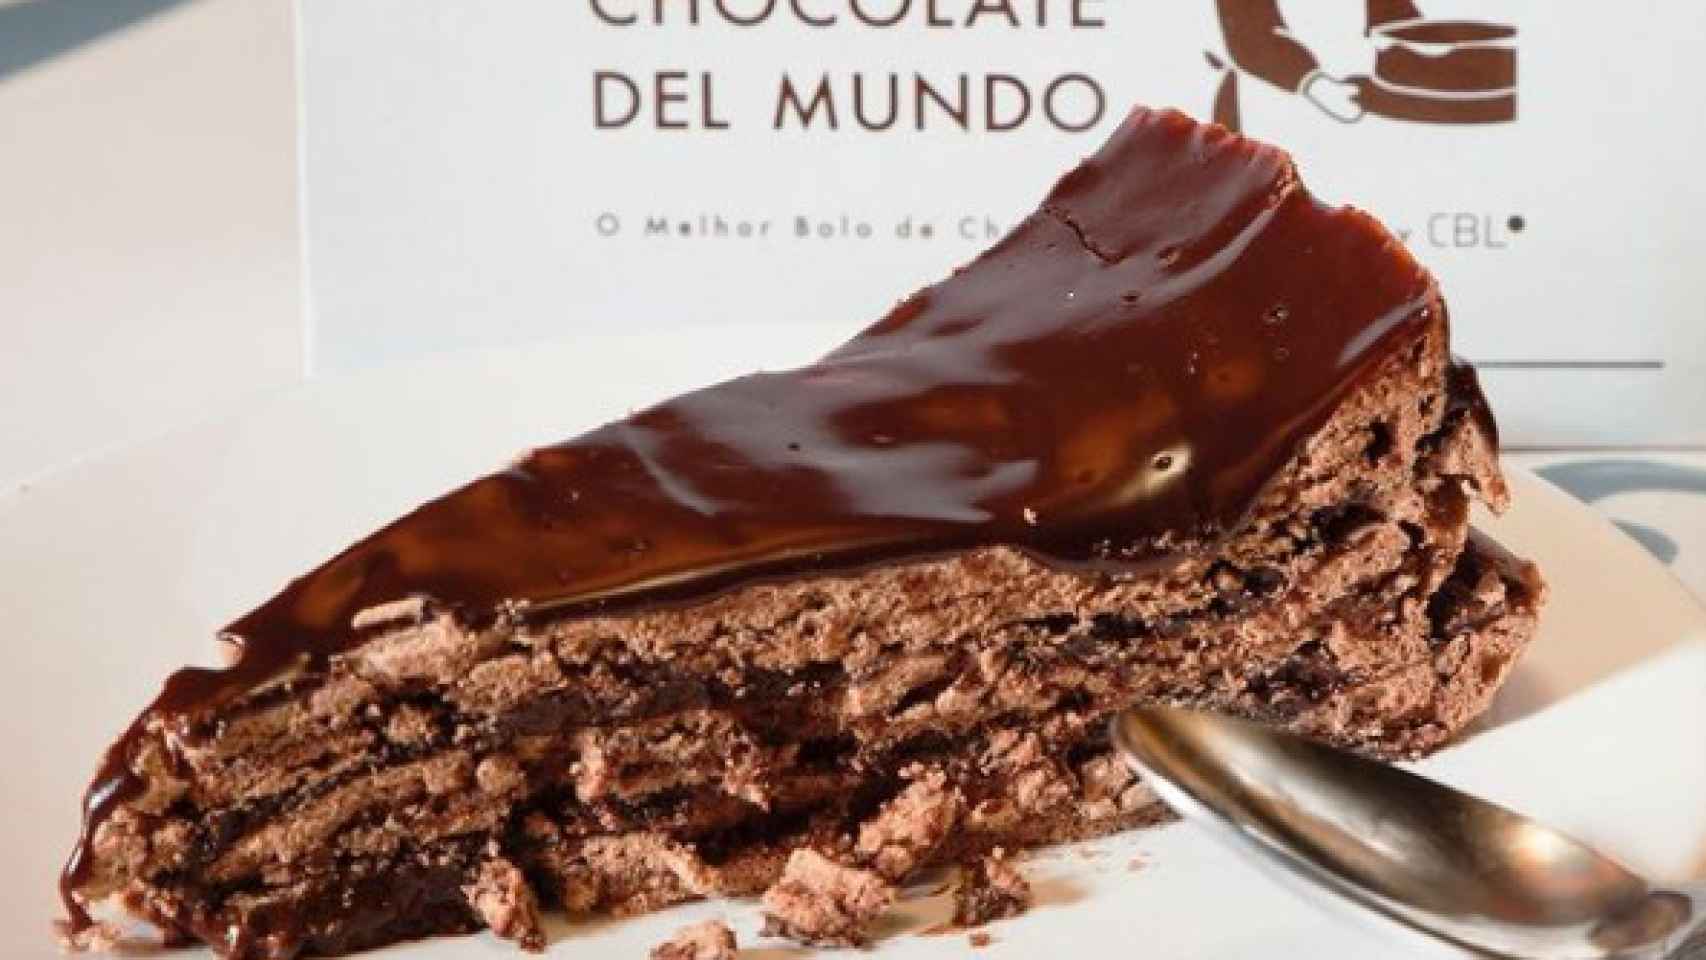 La Mejor Tarta De Chocolate Del Mundo